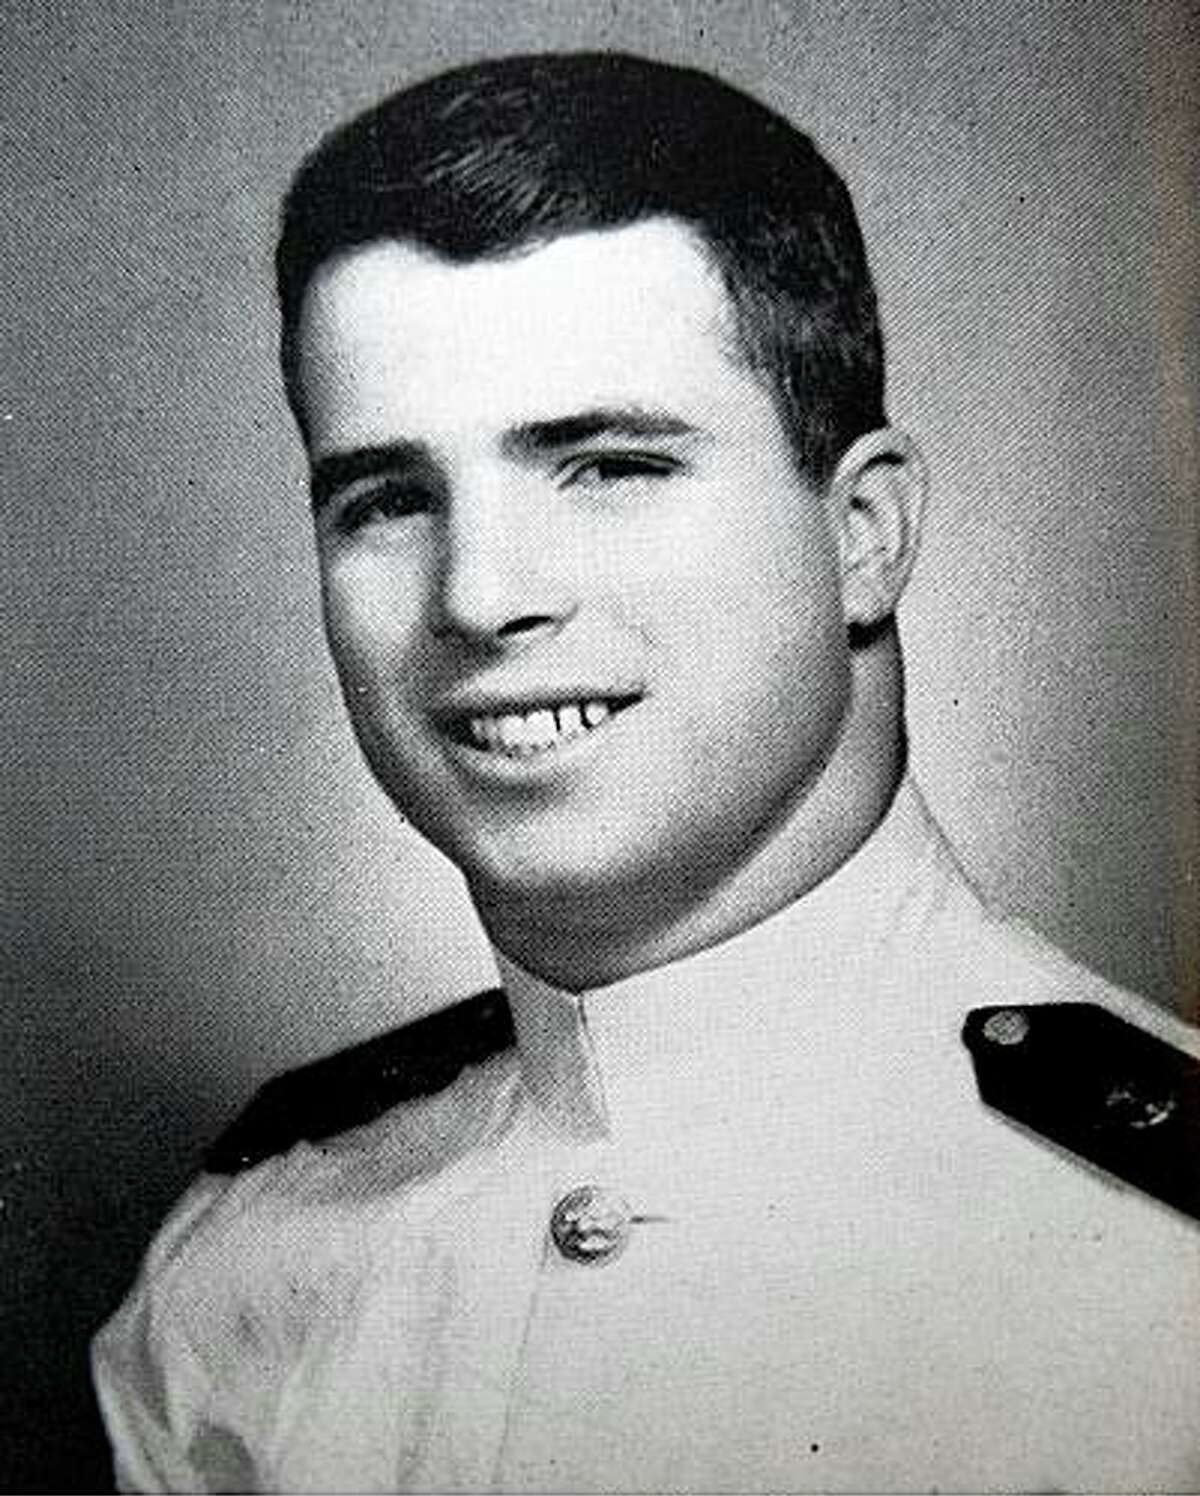 McCain at Annapolis.JPG